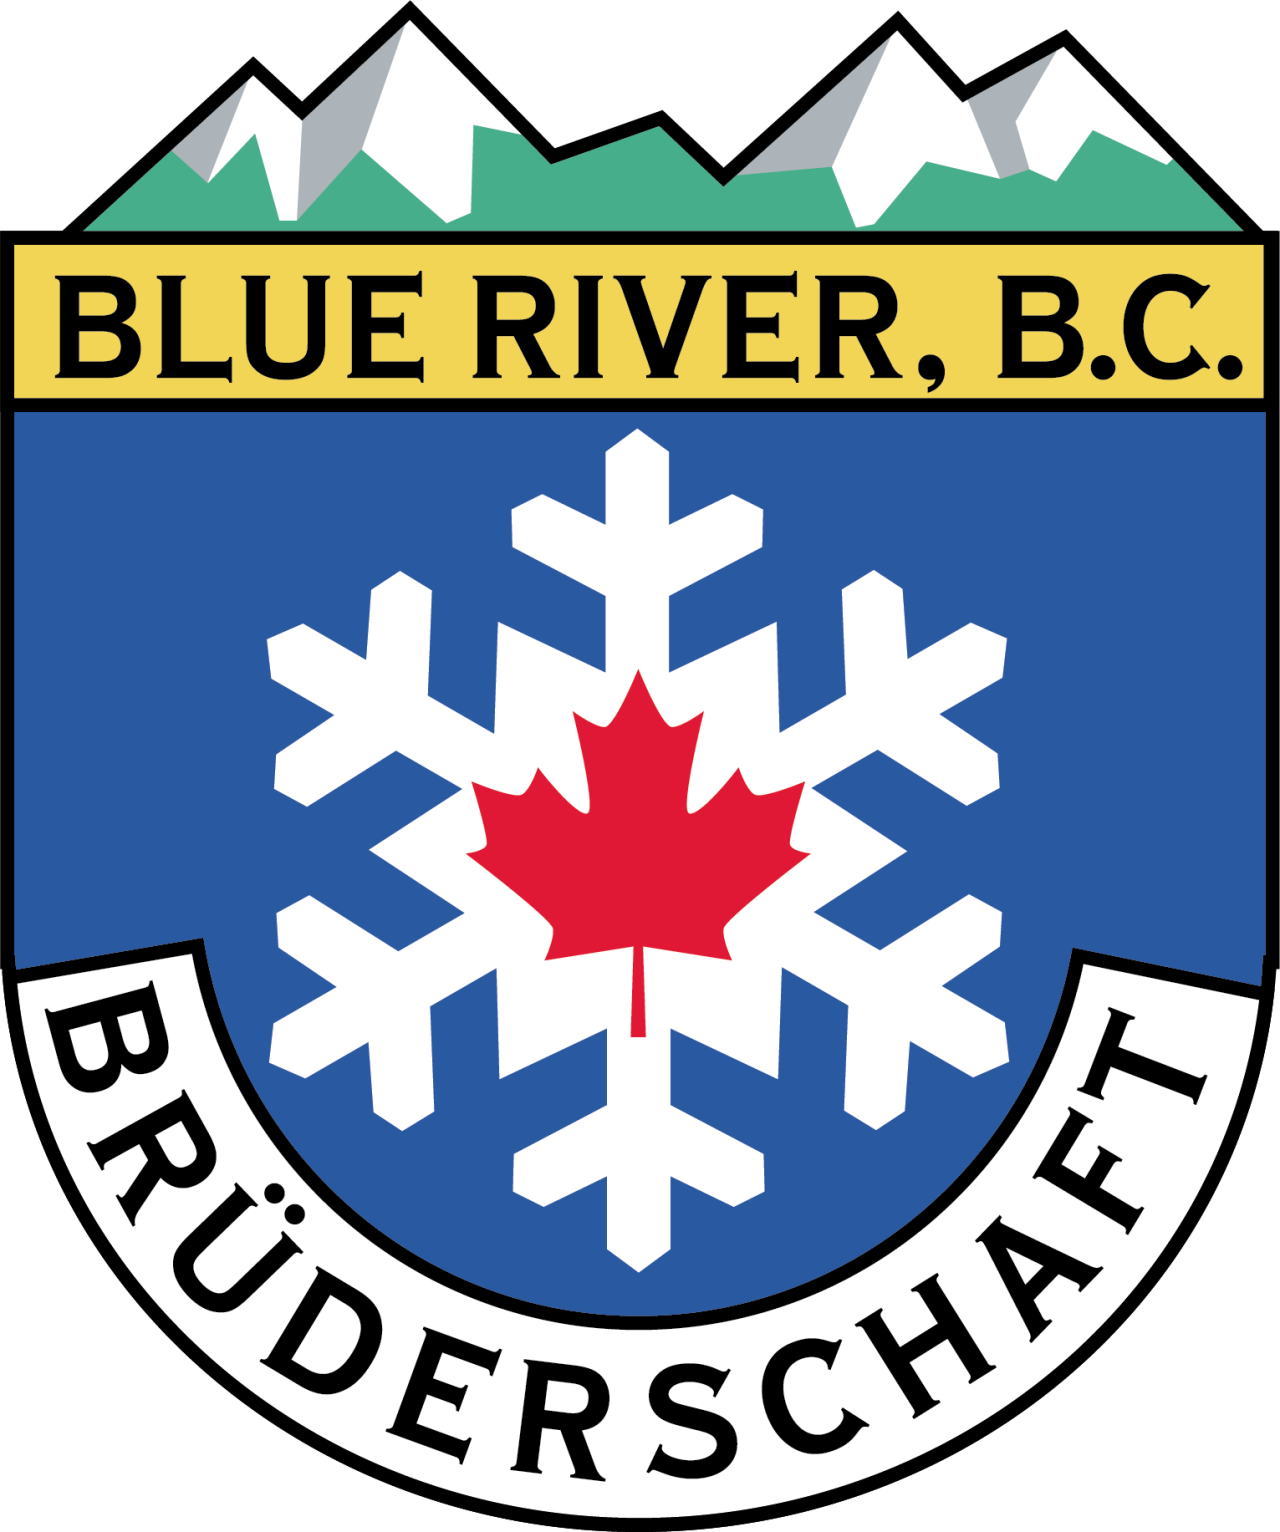 The Blue River Bruderschaft 